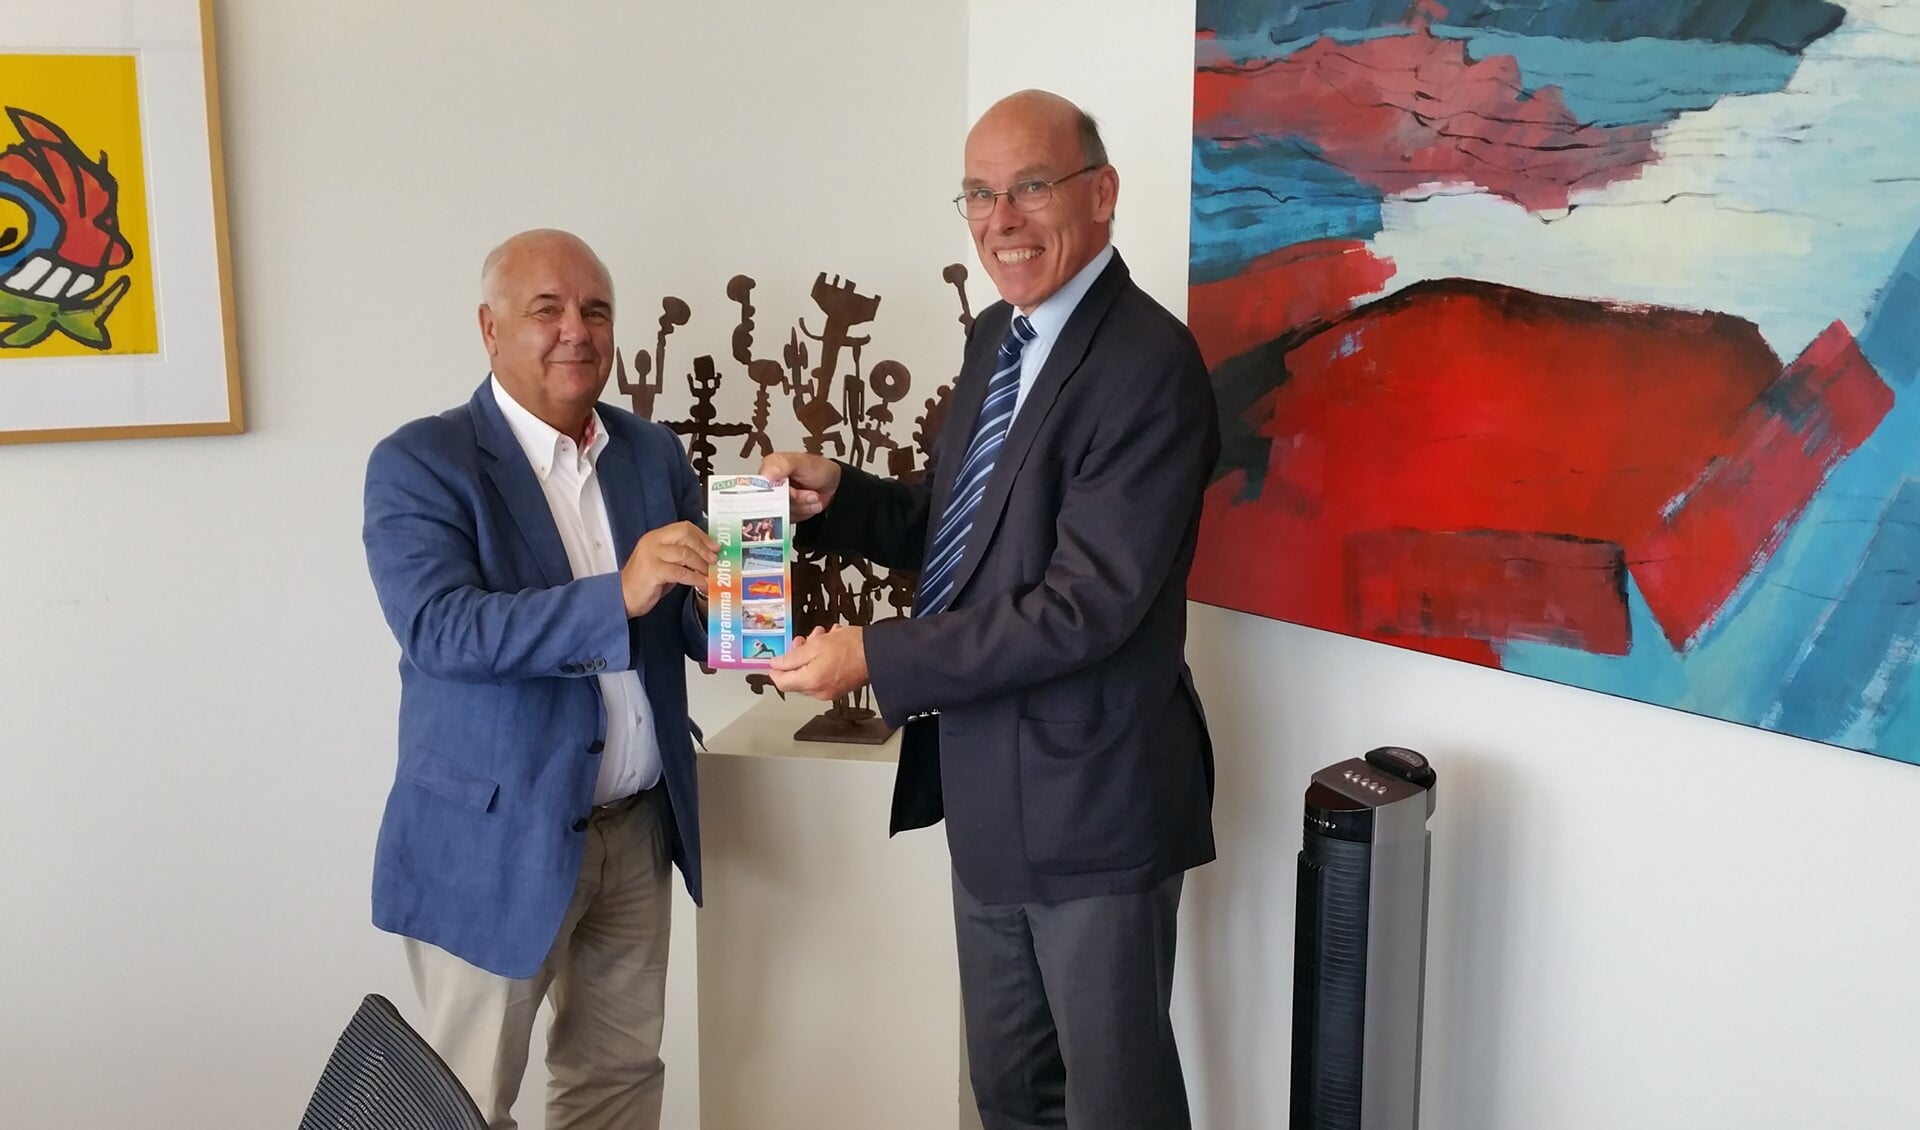 Burgemeester Fons Hertog krijgt de eerste brochure uit handen van Evert de Jong, voorzitter Volksuniversiteit Het Gooi.